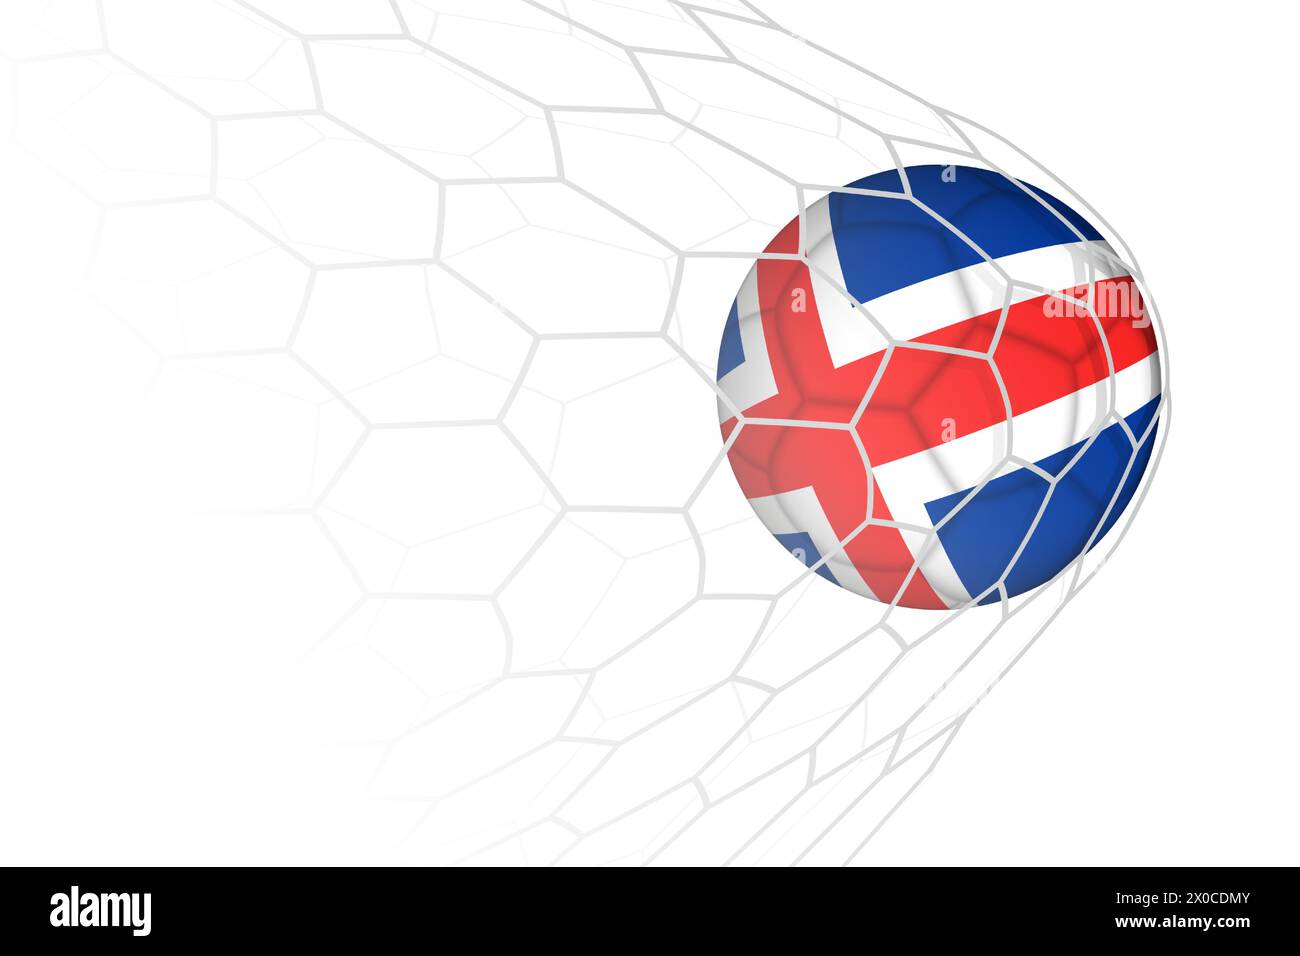 Iceland flag soccer ball in net. Vector sport illustration. Stock Vector